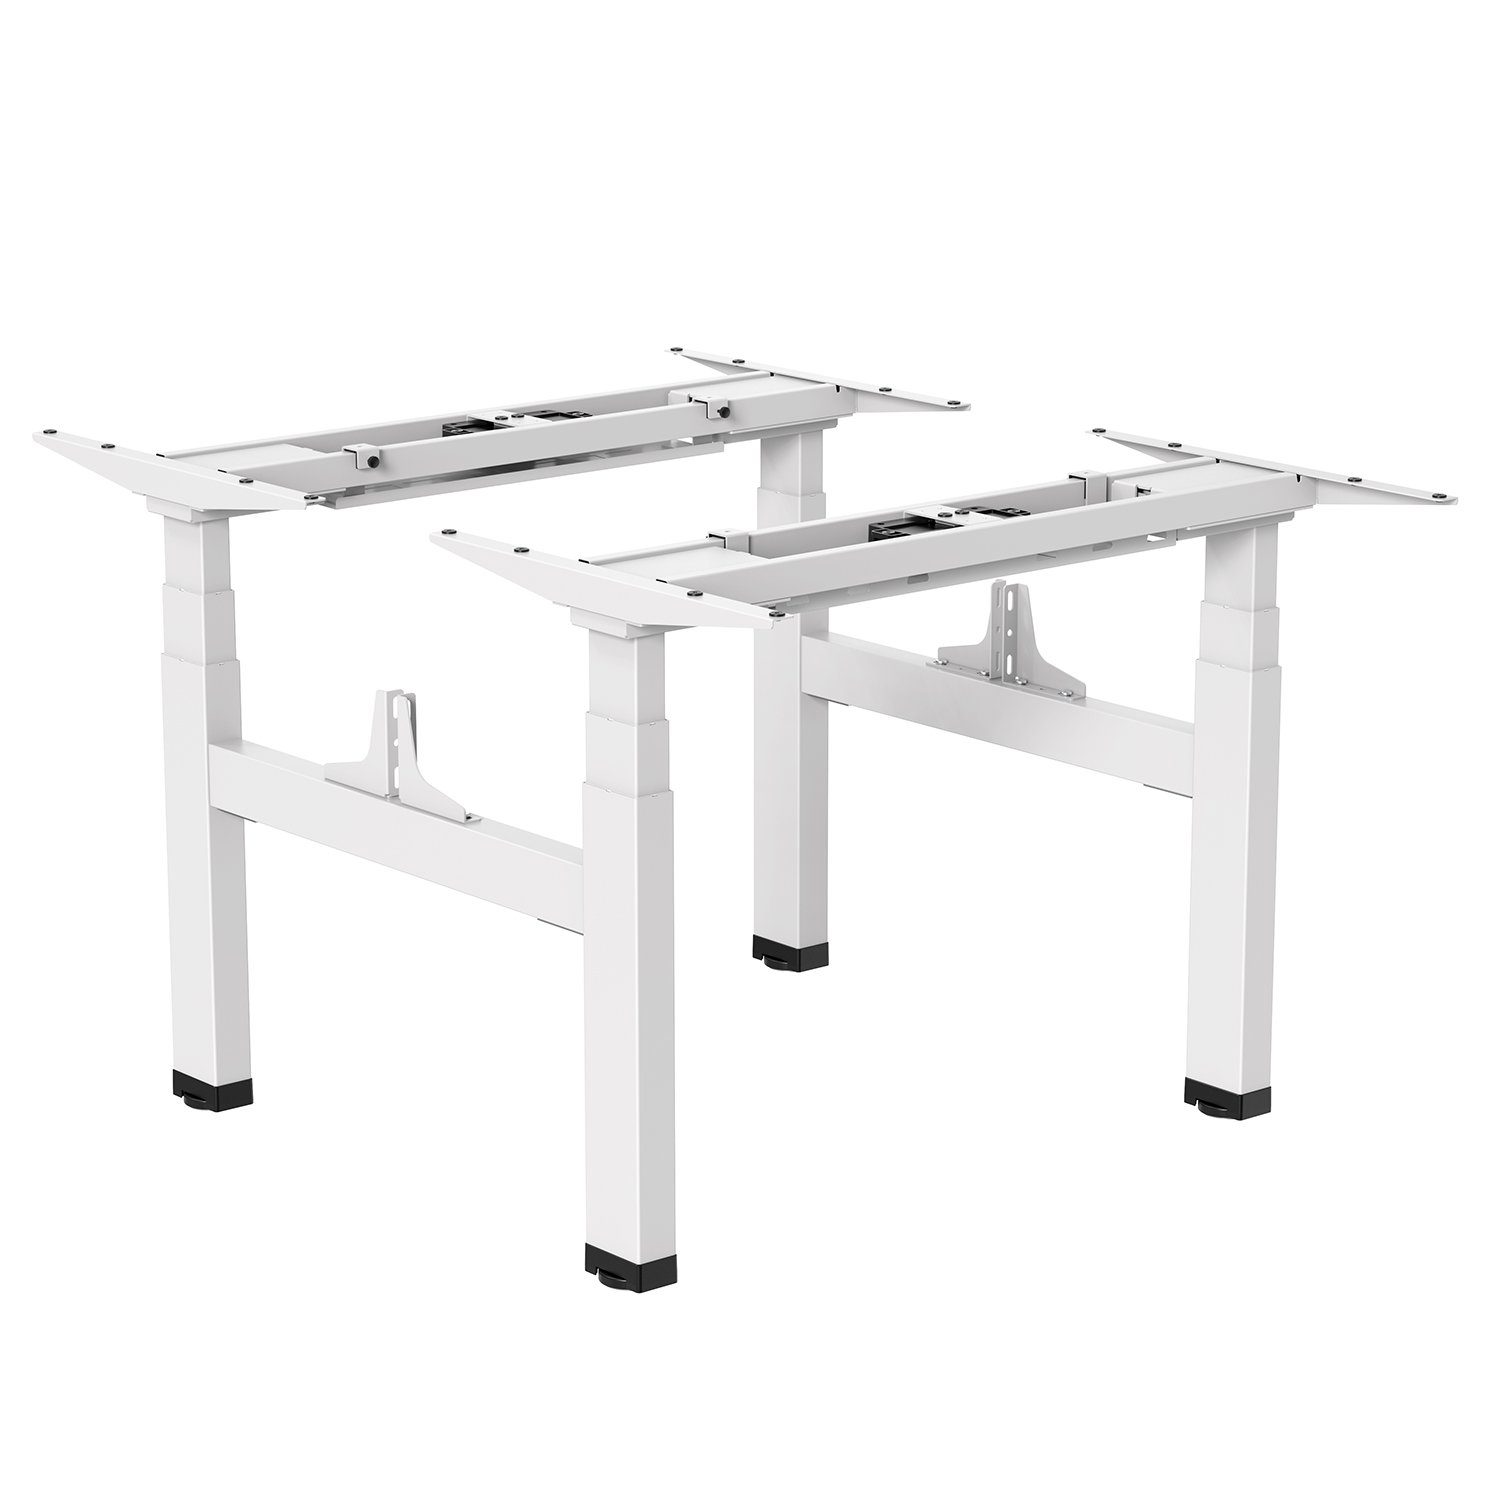 Ergo Office Schreibtisch ER-404, Doppeltischgestell Sitz-Steh-Schreibtisch ohne Tischplatte bis 2x125kg